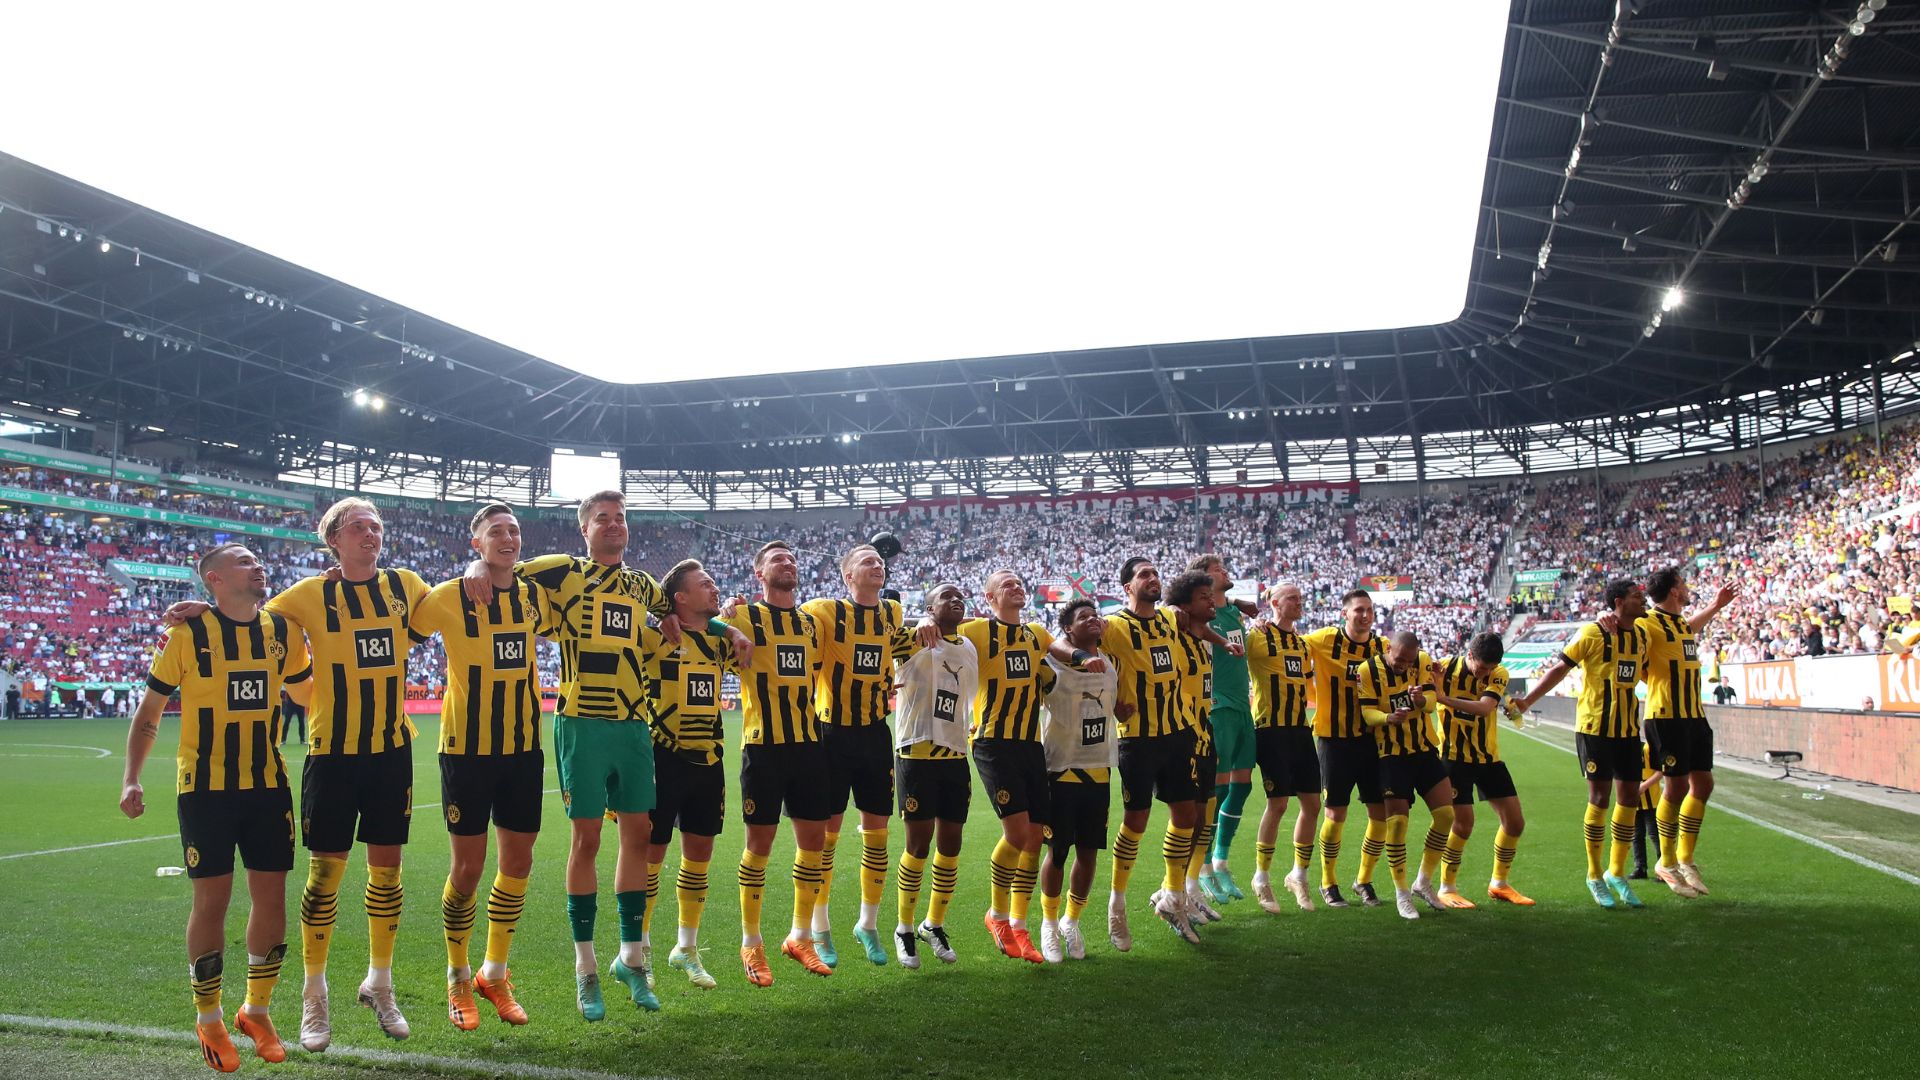 Jogadores do Borussia Dortmund comemorando após a vitória contra o Augsburg (Crédito: Getty Images)